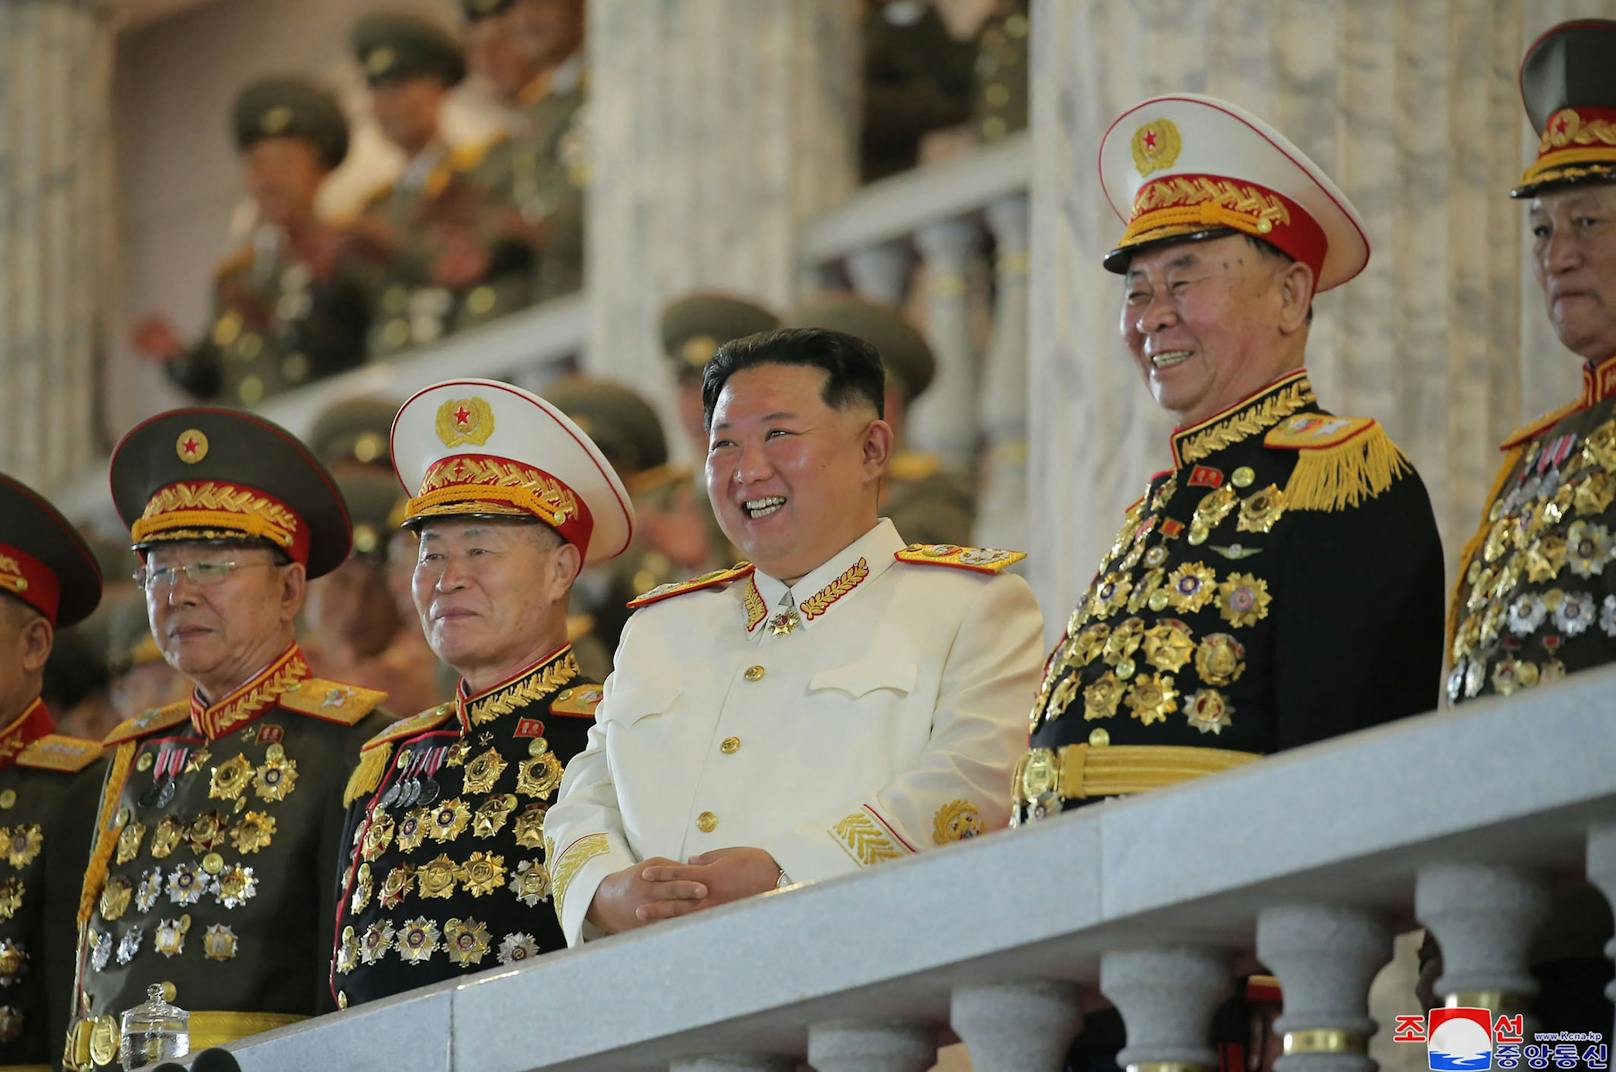 Nach KCNA-Angaben hielt Kim die Rede am Montagabend bei einer Parade zum 90. Jahrestag der Gründung der Koreanischen Revolutionären Volksarmee auf dem Kim-Il-Sung-Platz in Pyongyang.